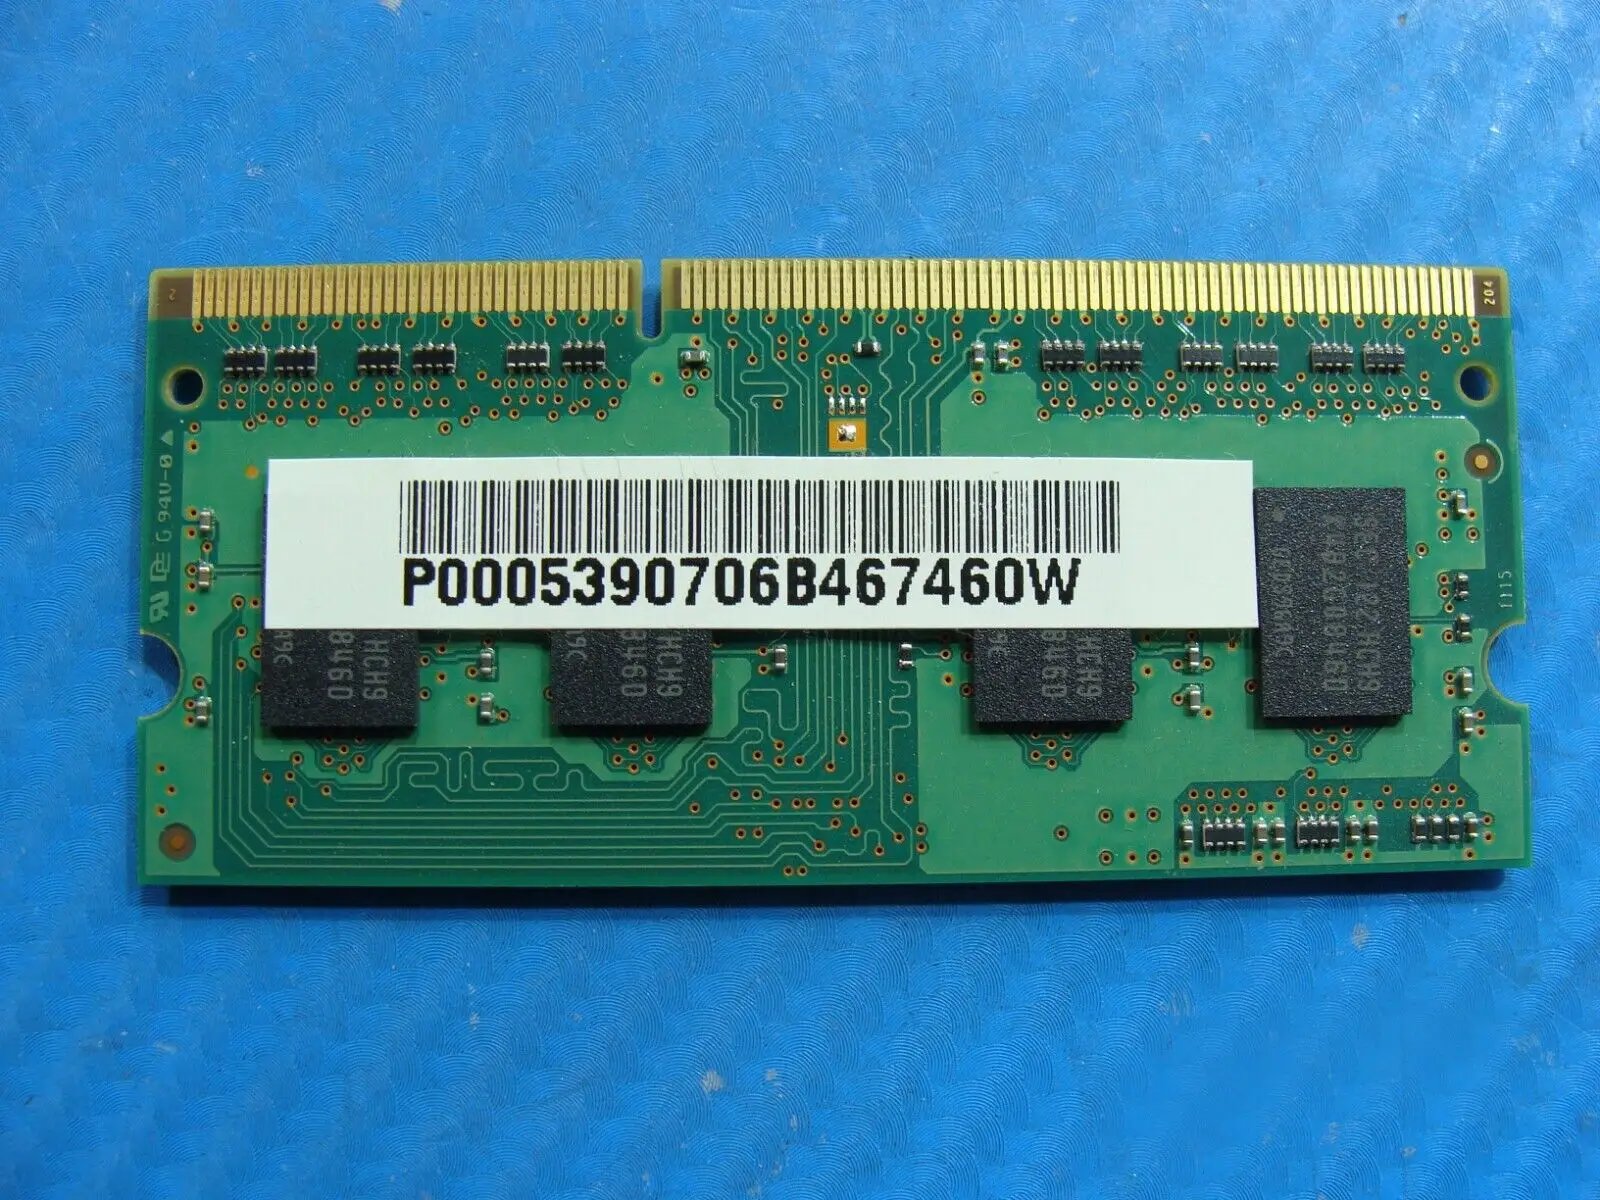 Toshiba L745 Samsung 2GB 1Rx8 Memory RAM PC3-10600S M471B5773DH0-CH9